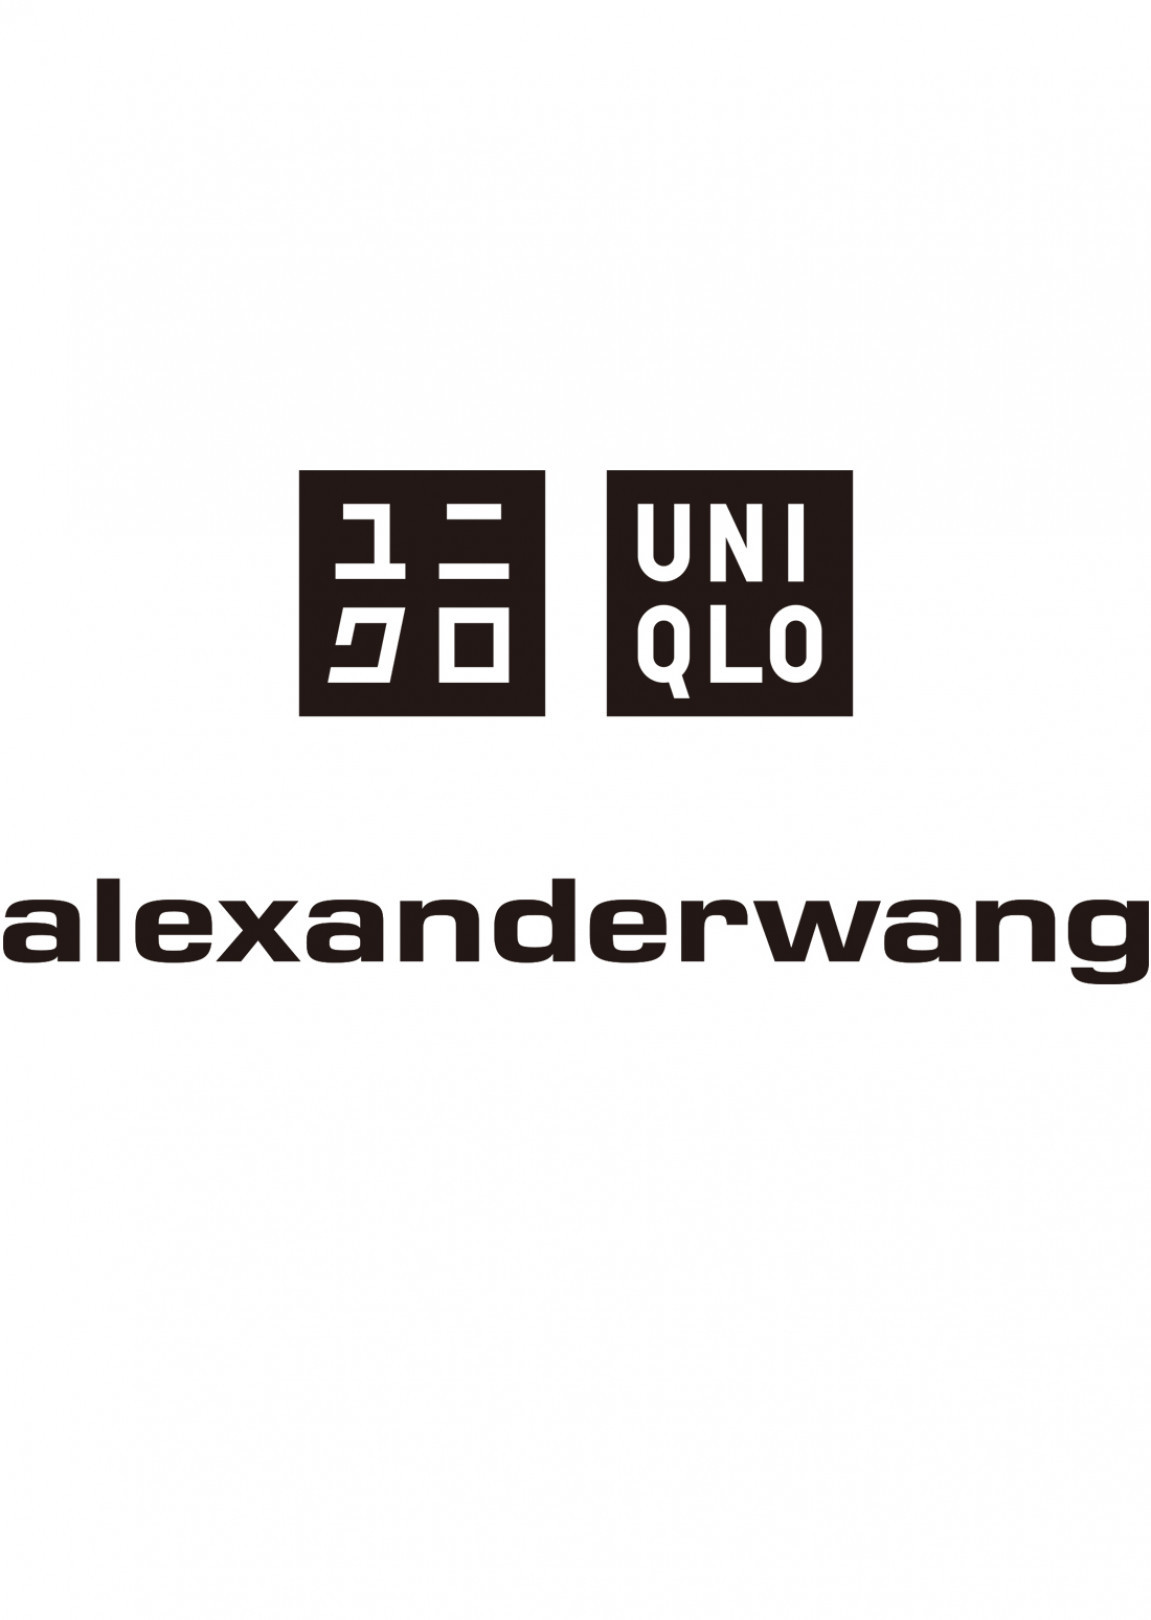 ユニクロがアレキサンダー ワンとコラボしたヒートテックコレクション「UNIQLO and ALEXANDER WANG」を発表